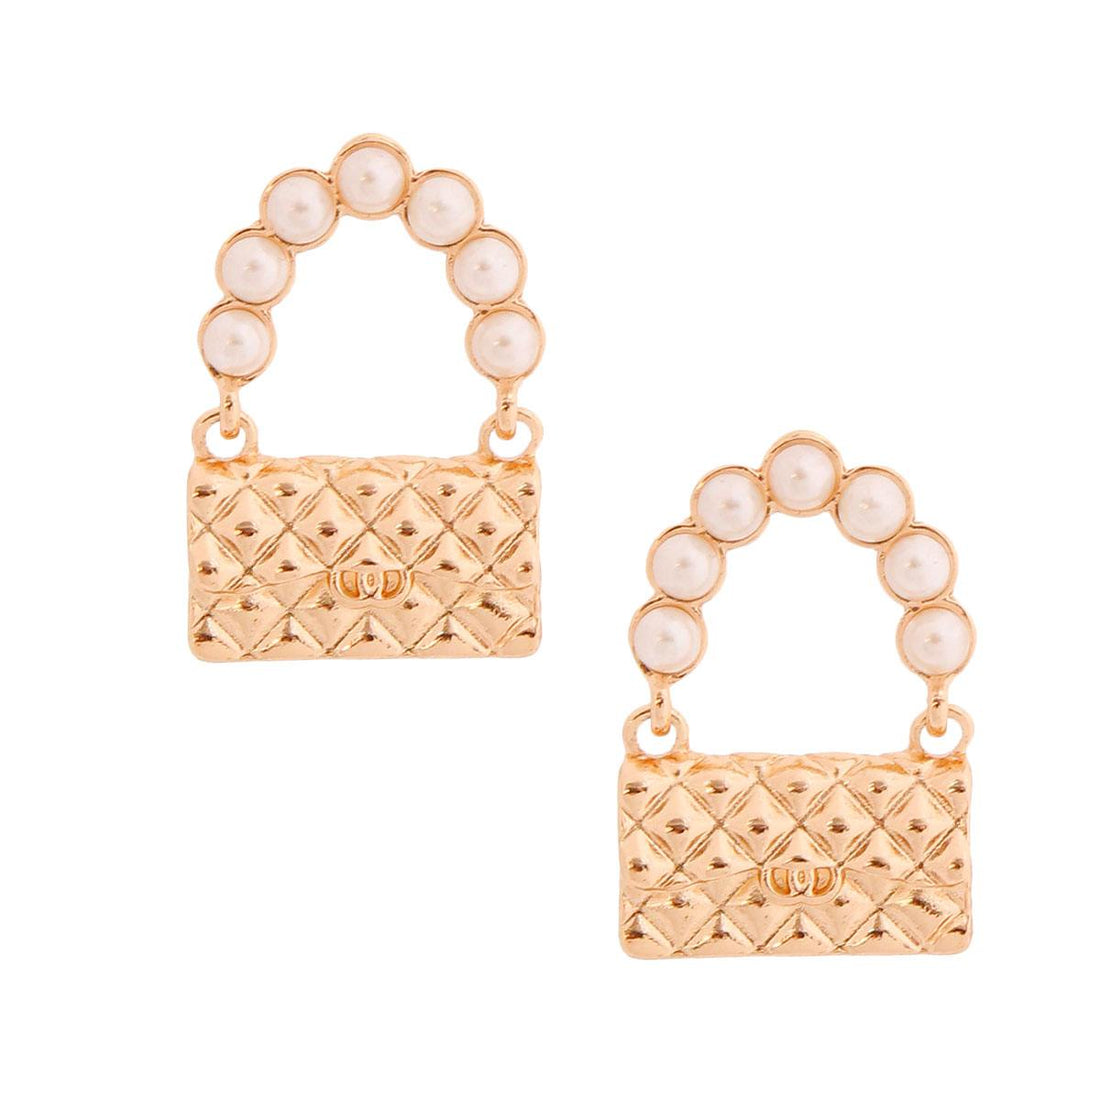 Designer Handbag Gold Stud Earrings